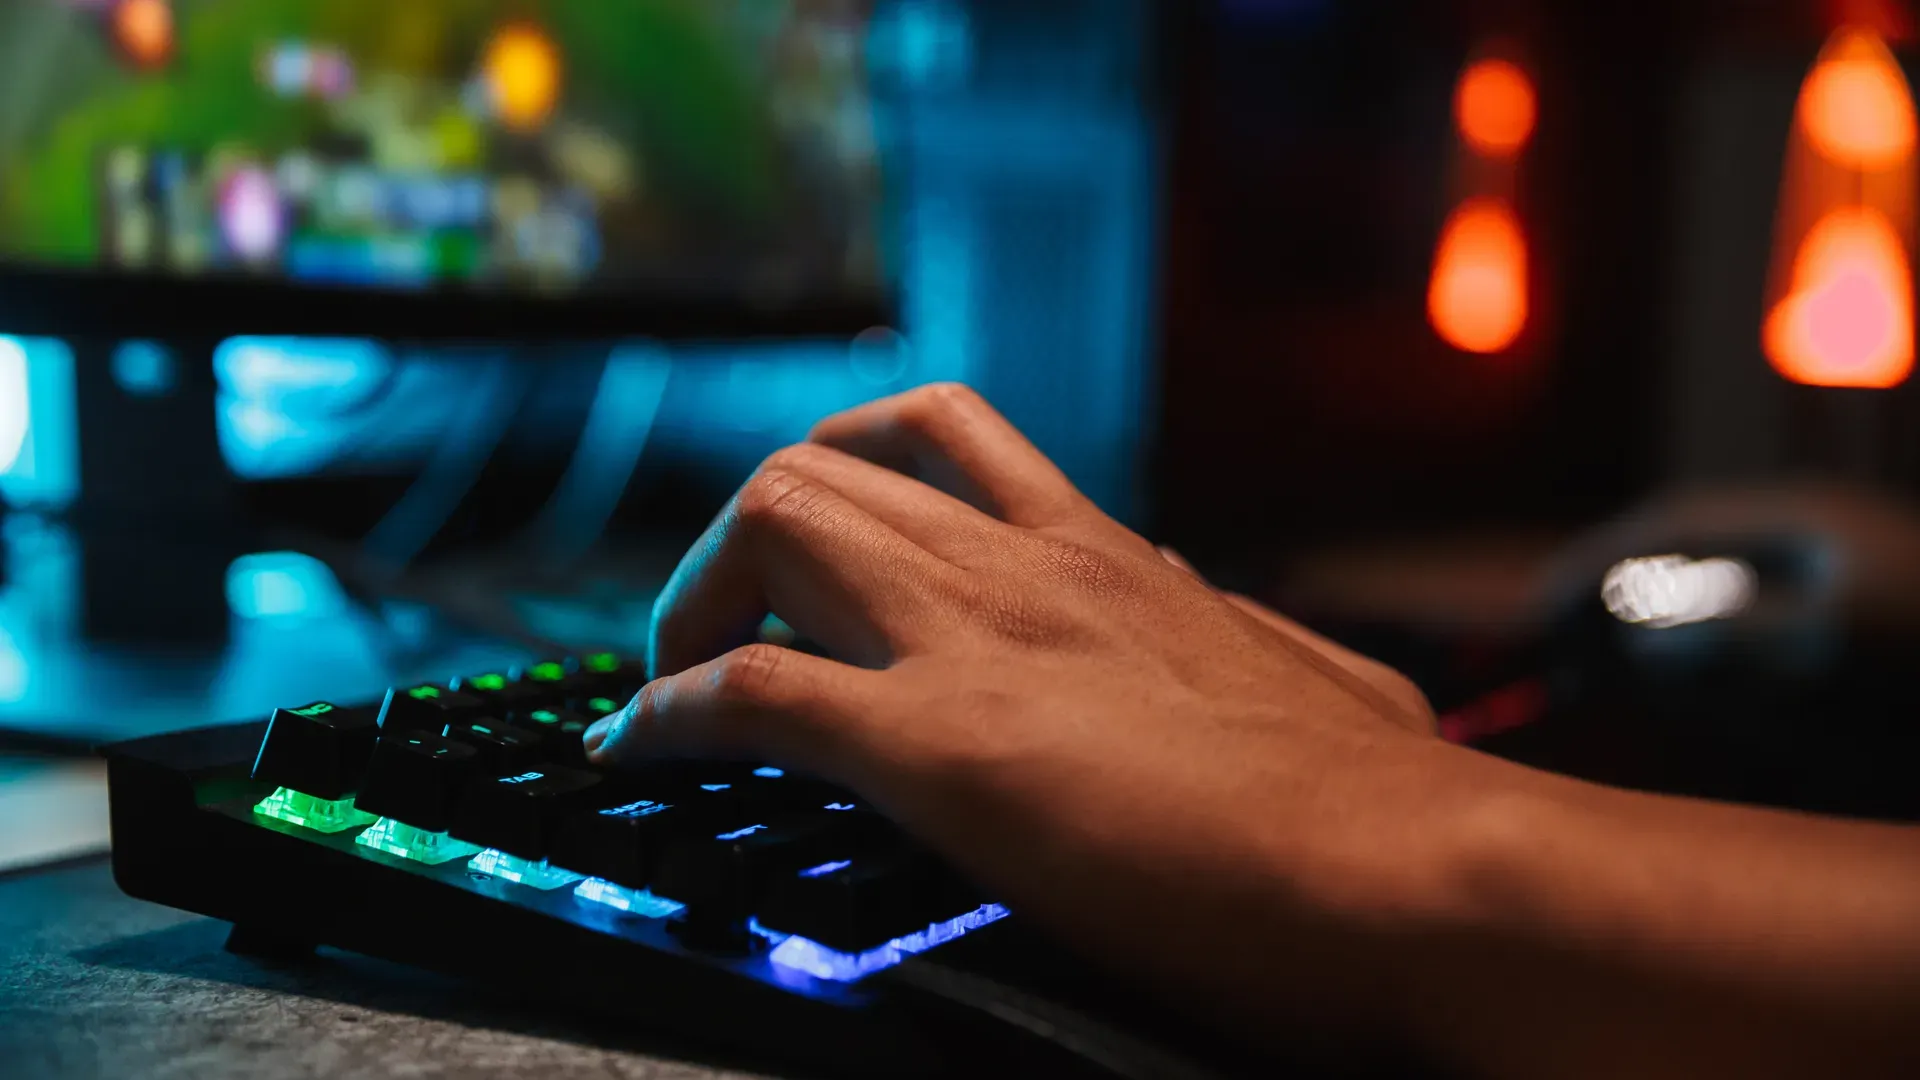 Um teclado preto em um ambiente pouco iluminado, onde podemos ver uma das mãos de uma pessoa branca teclando no aparelho, desfocada ao fundo e à esquerda está uma tela com o que parece ser o jogo League of Legends